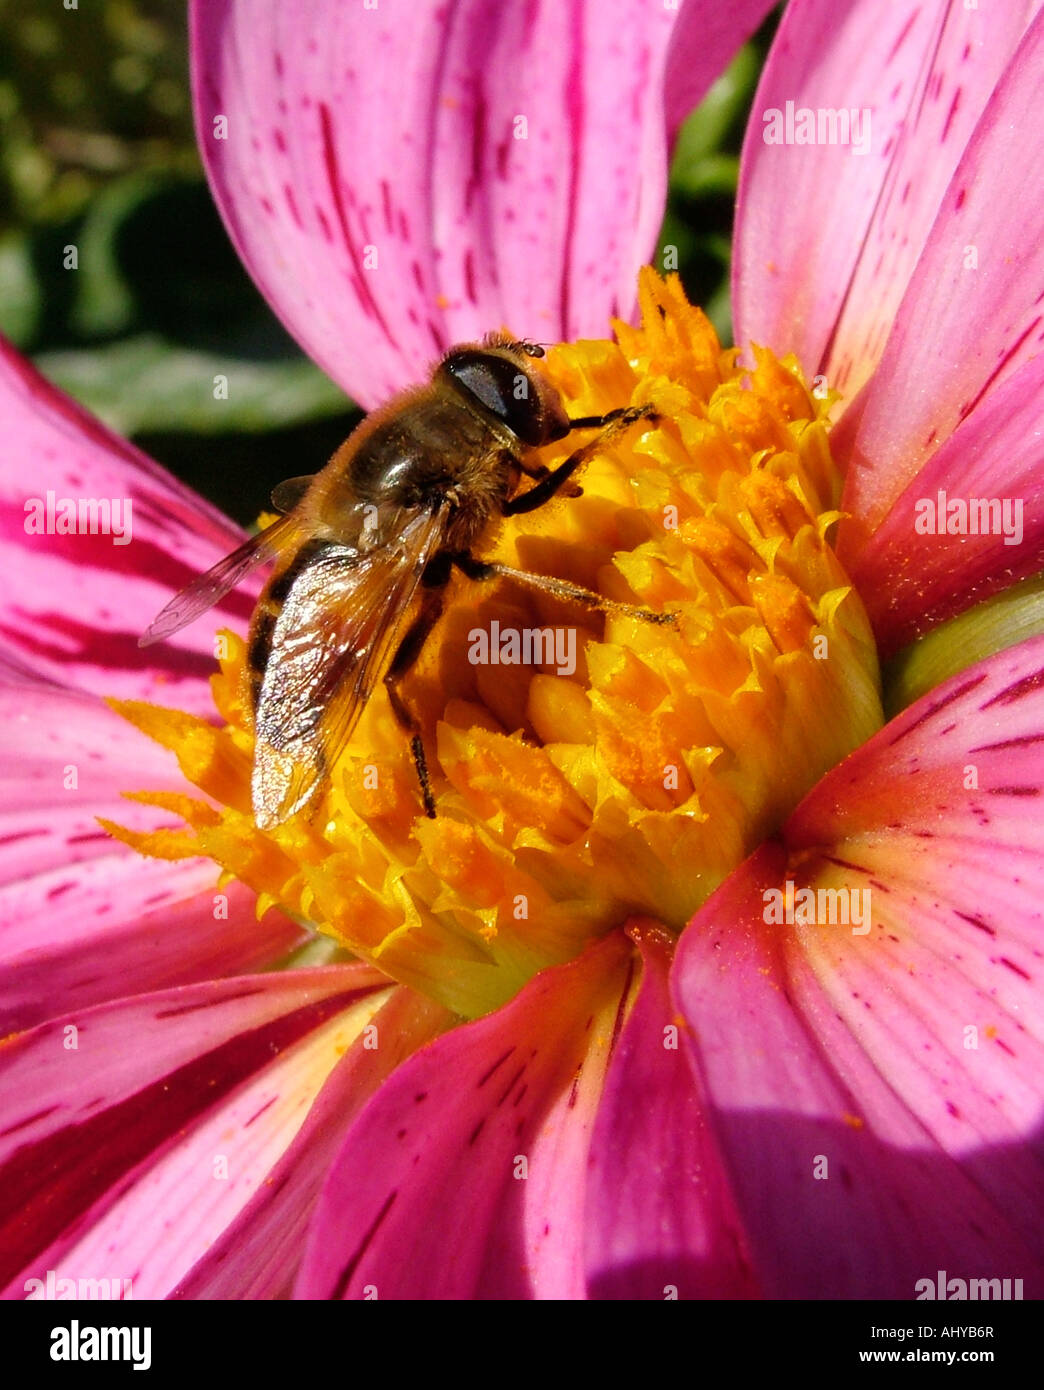 Un miele delle api per raccogliere il polline su una rosa viola singolo Dahlia presso il Dahlia Giardino prova a Point Defiance Park, Tacoma, WA, Stati Uniti d'America Foto Stock